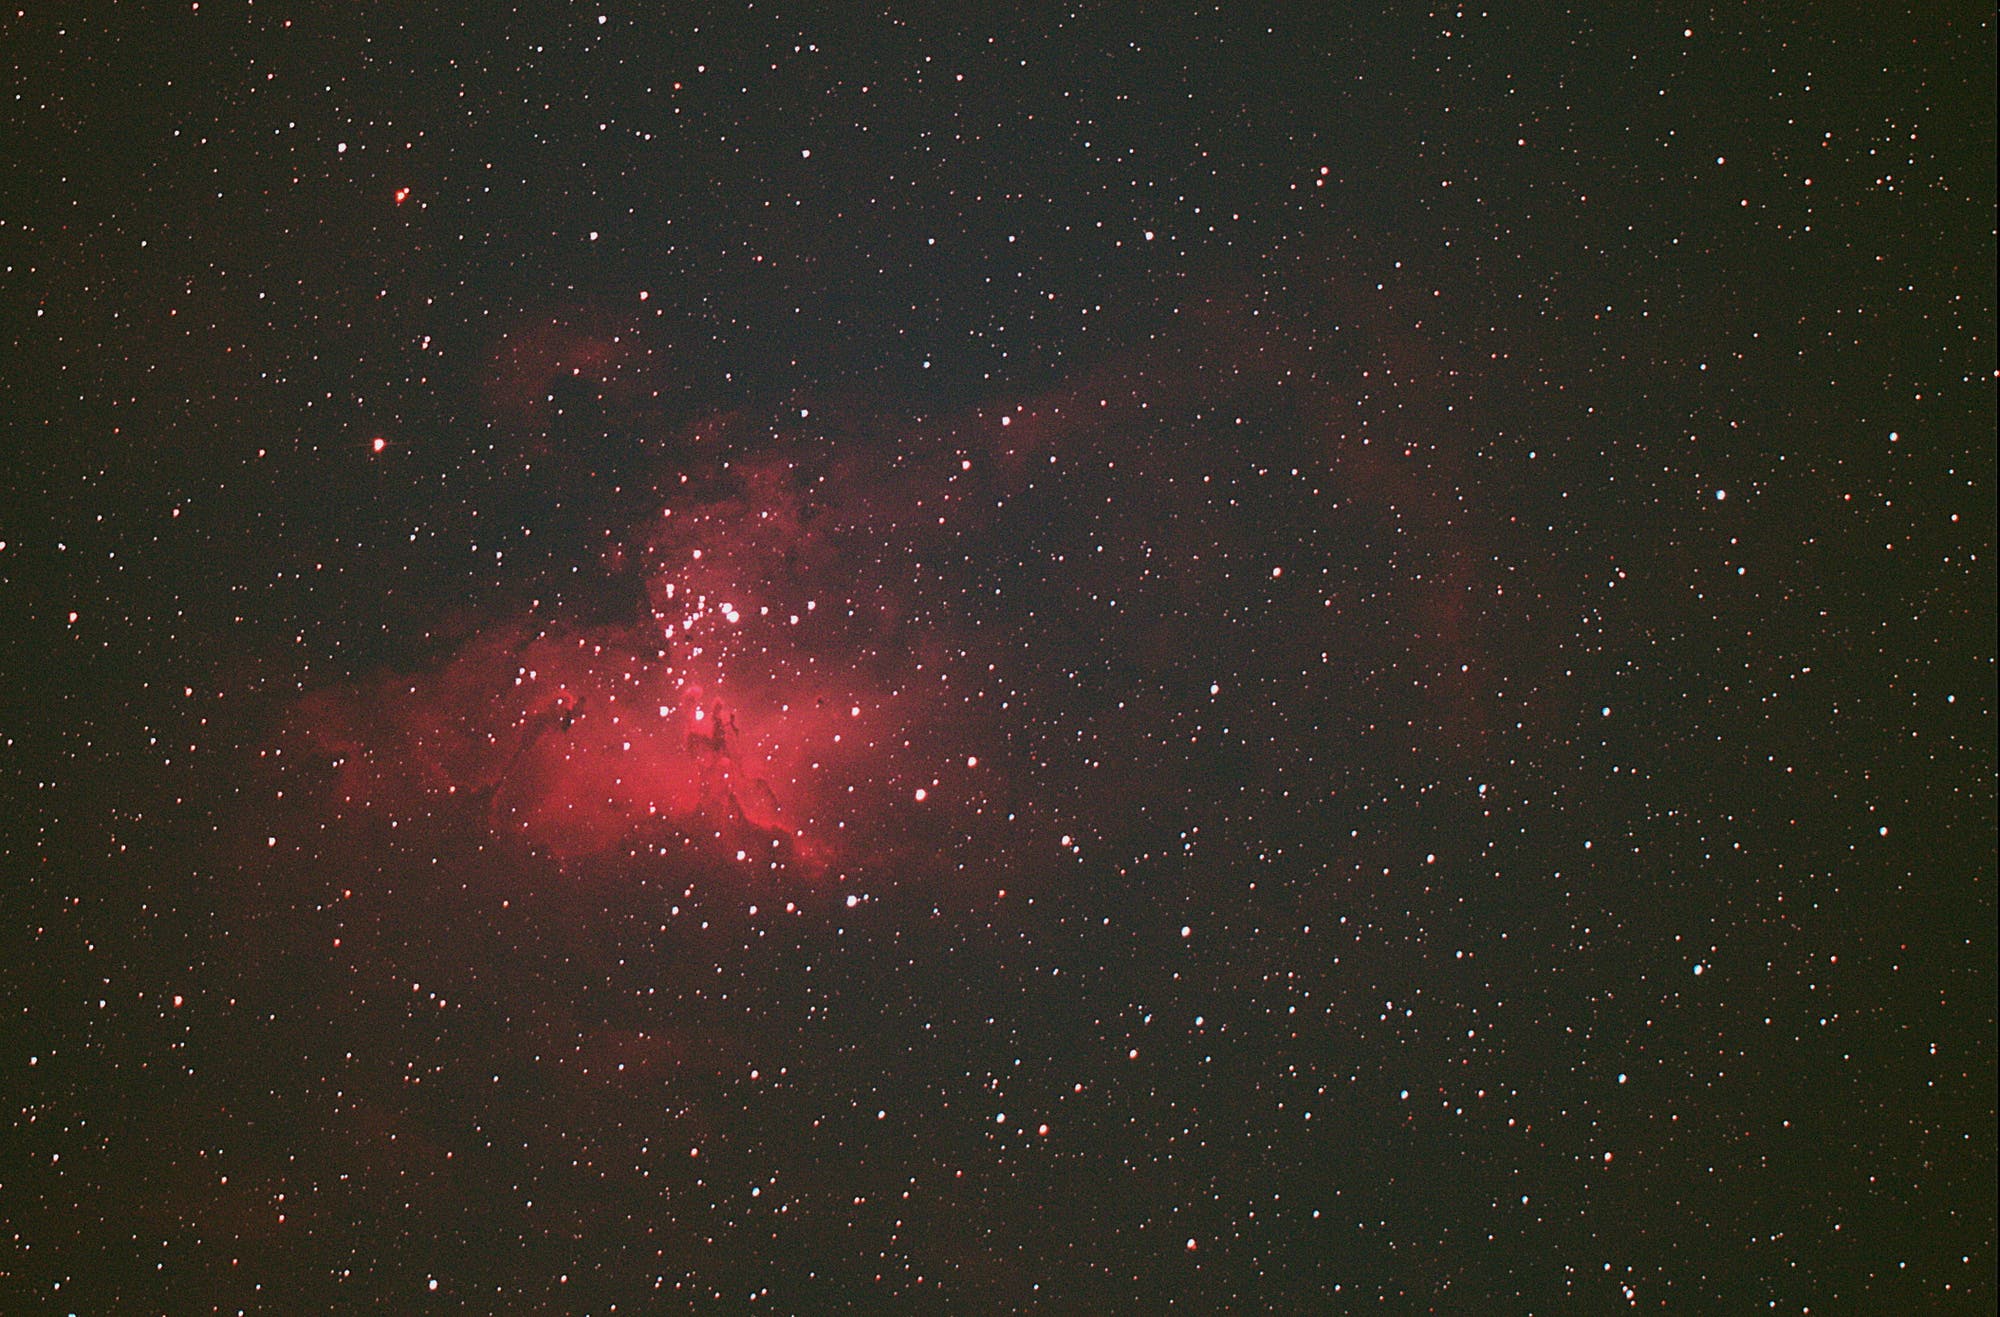 Sternentstehungsgebiet M 16 (Adlernebel) in Serpens Cauda